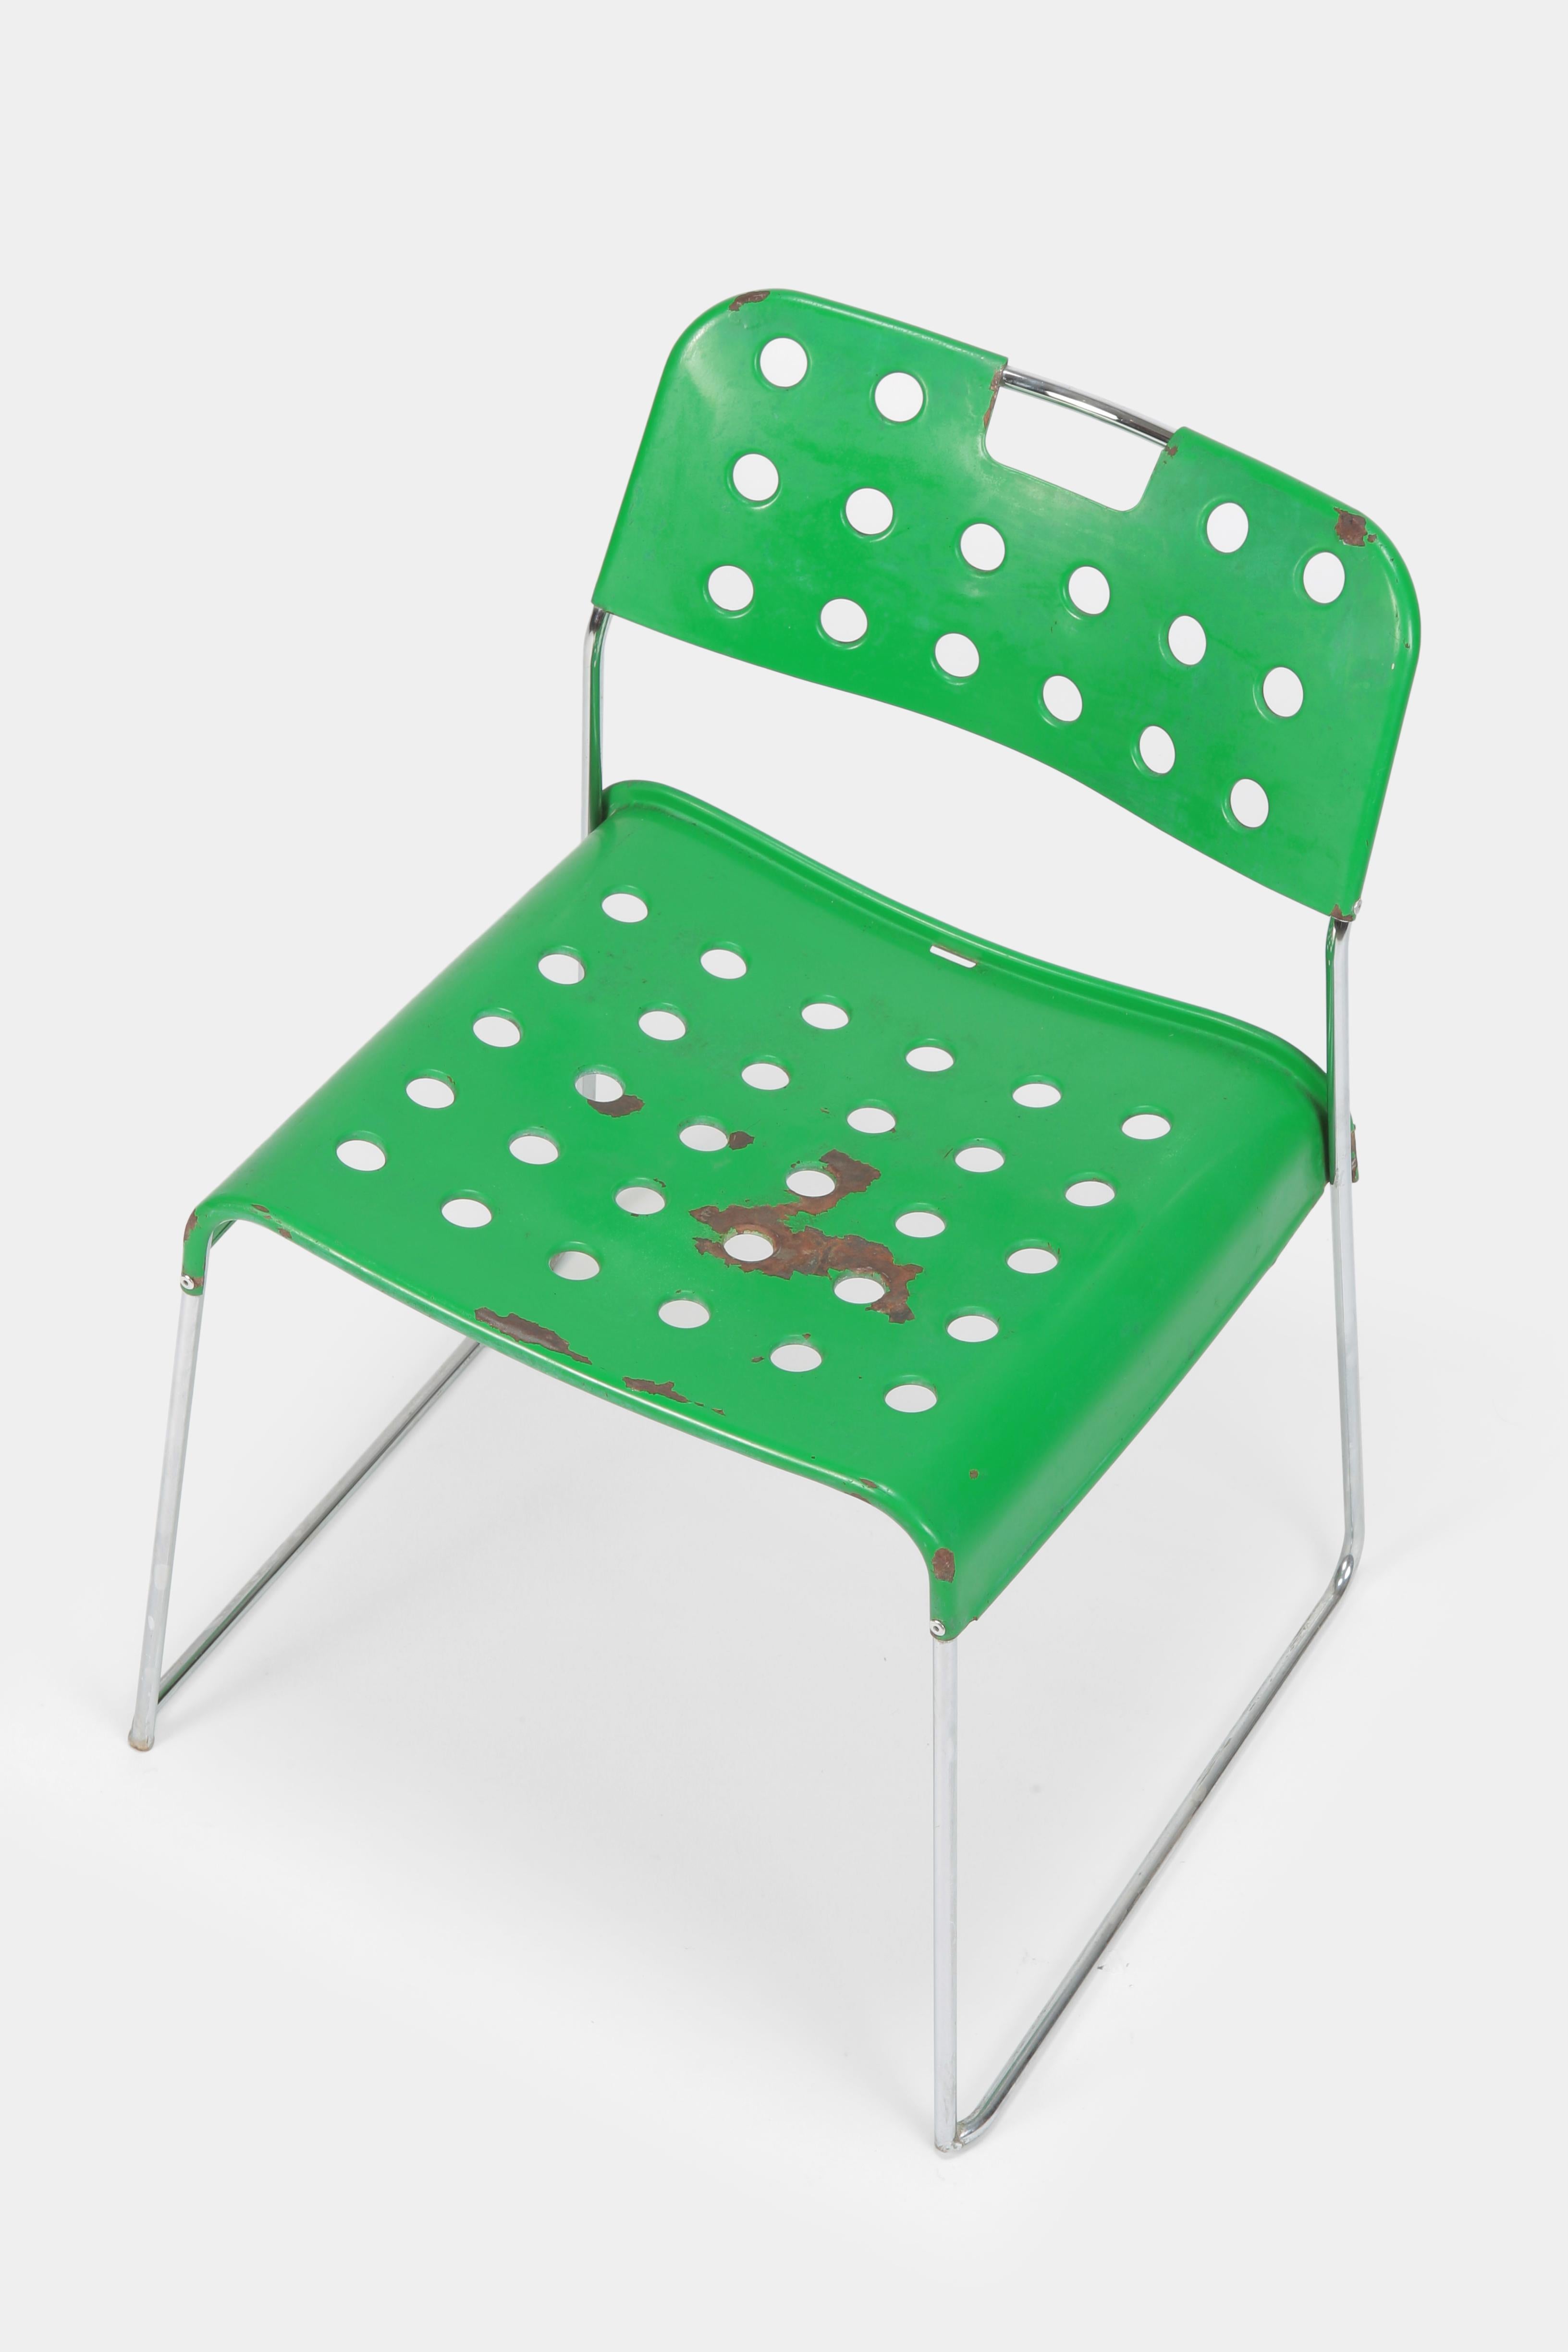 Italian Rodney Kinsman “Omstak” Chair Bieffeplast, 1970s